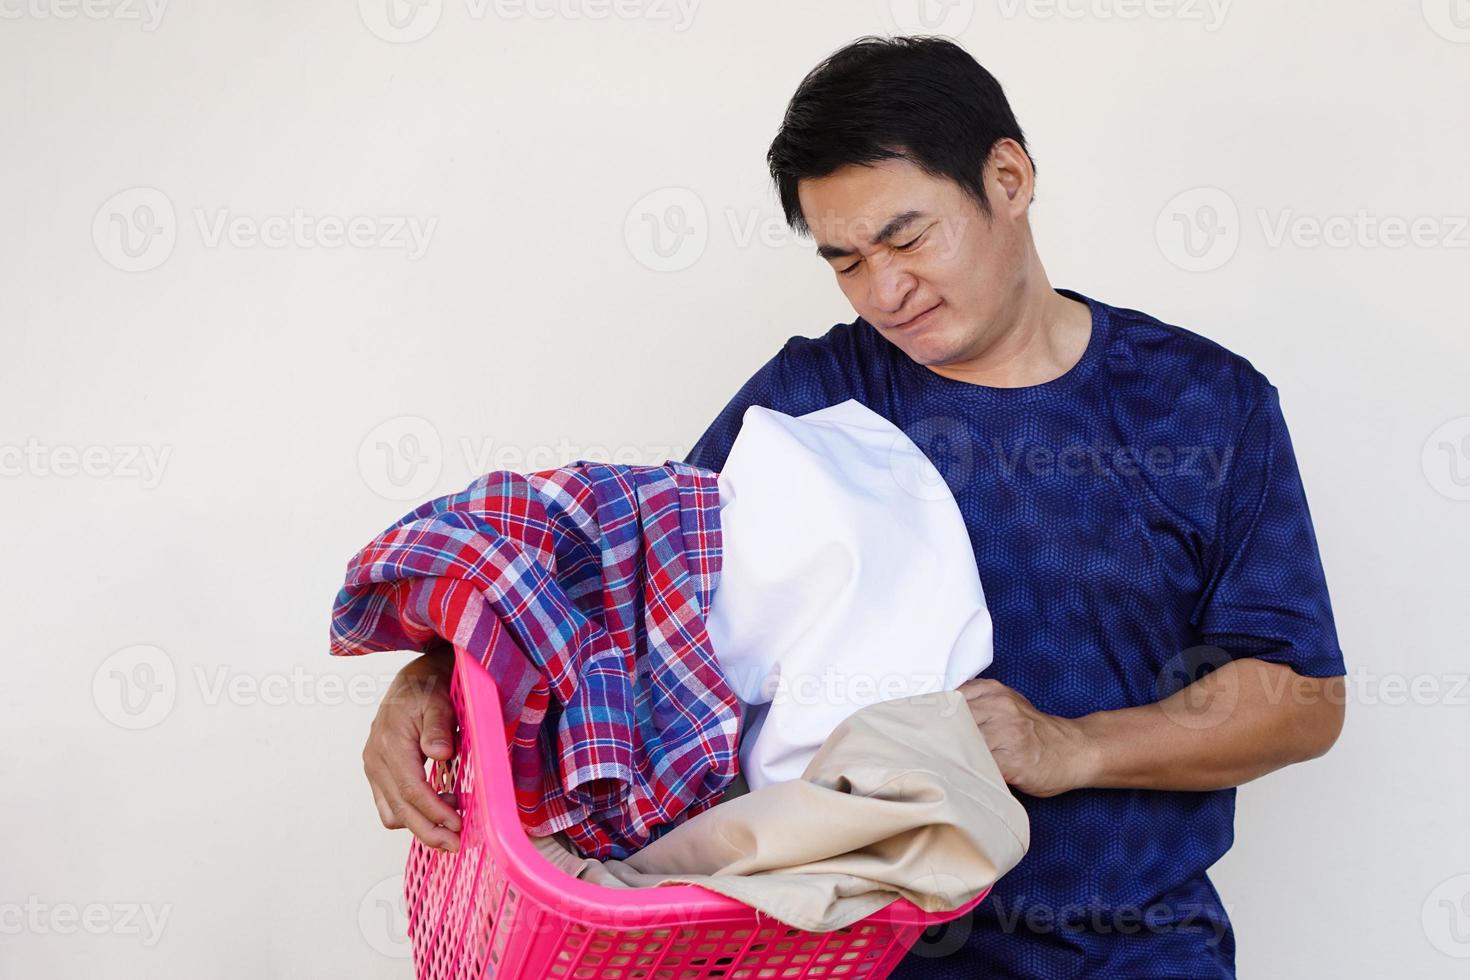 un homme asiatique tient un panier de vêtements, se sent ennuyé et paresseux, il ne veut pas faire la lessive. concept, corvée ennuyeuse, travaux ménagers. l'homme ne veut pas laver les vêtements. photo